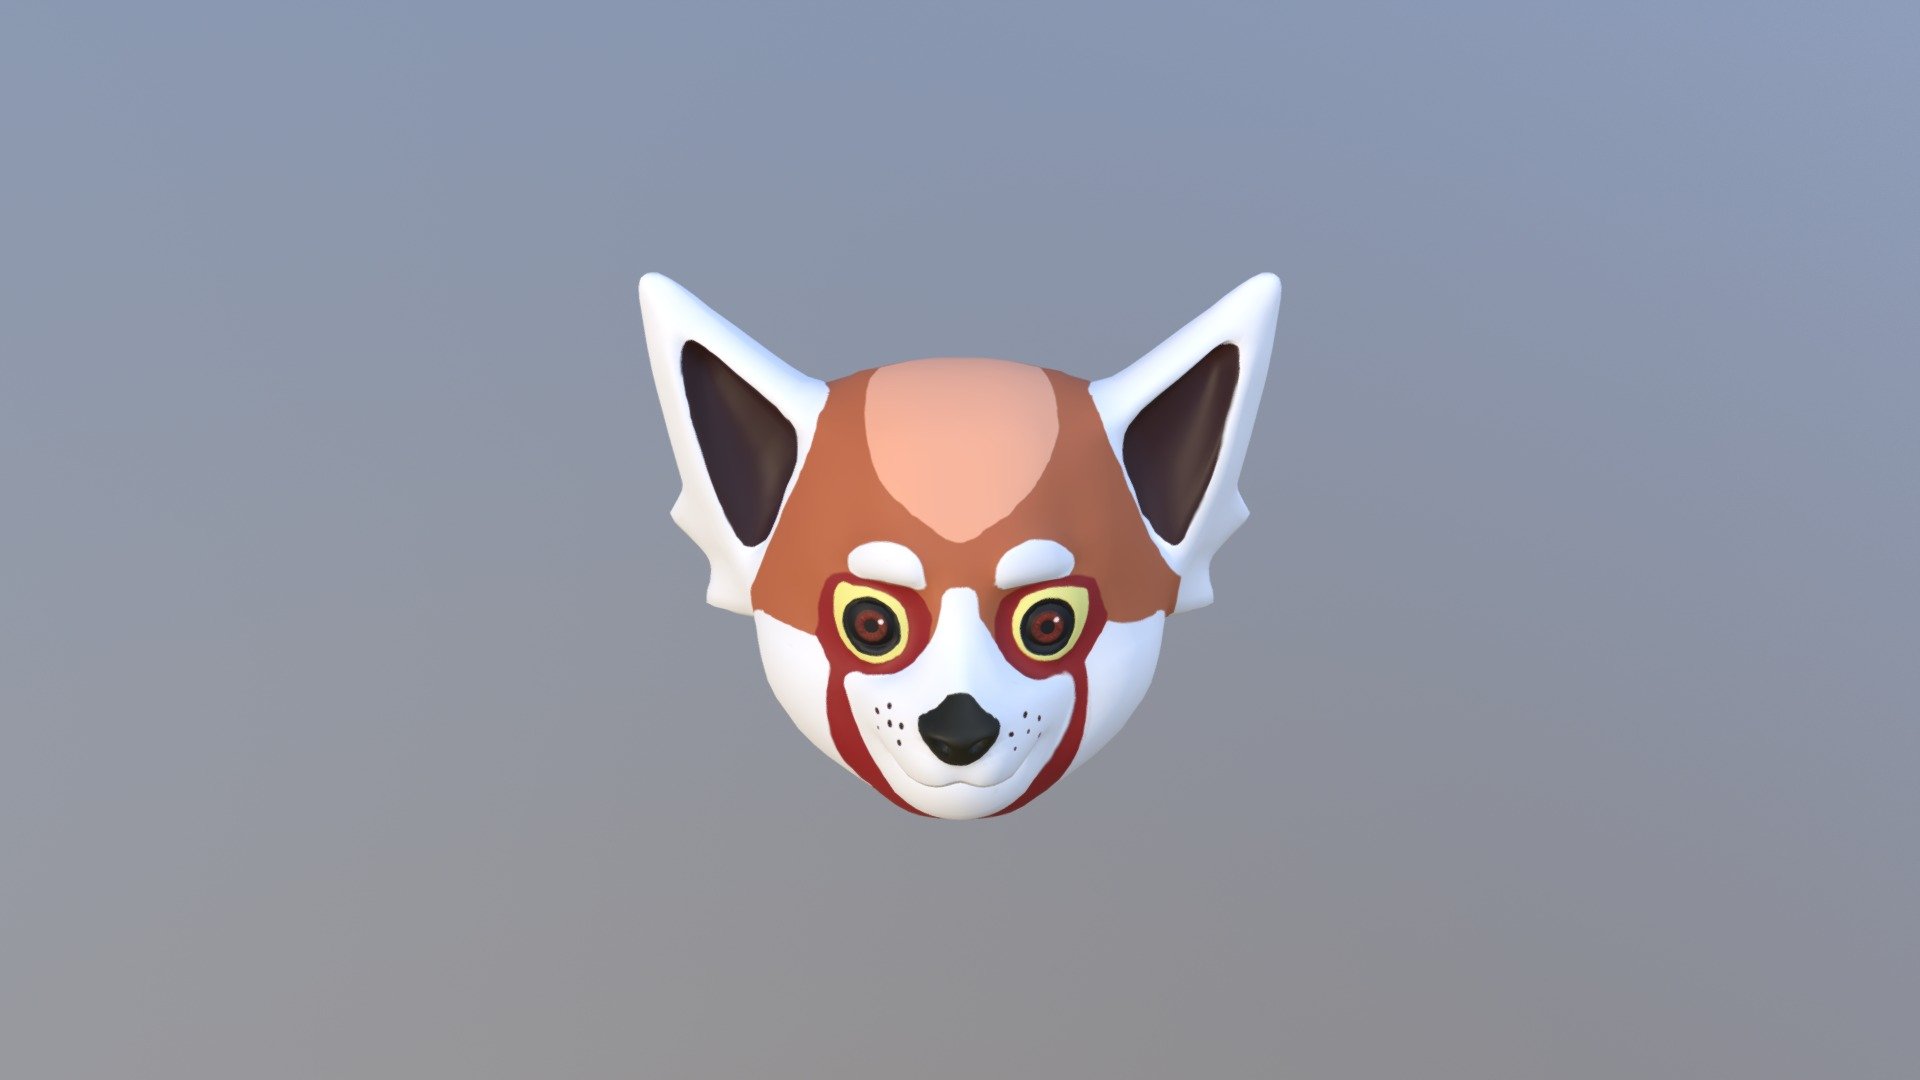 Red Panda - 3D model by JulianaSoler 3d model